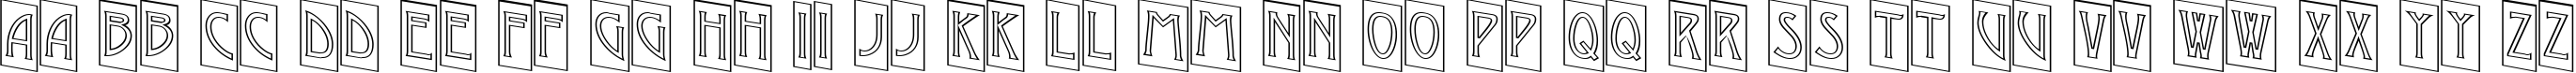 Пример написания английского алфавита шрифтом a_ModernoCmOtlDn